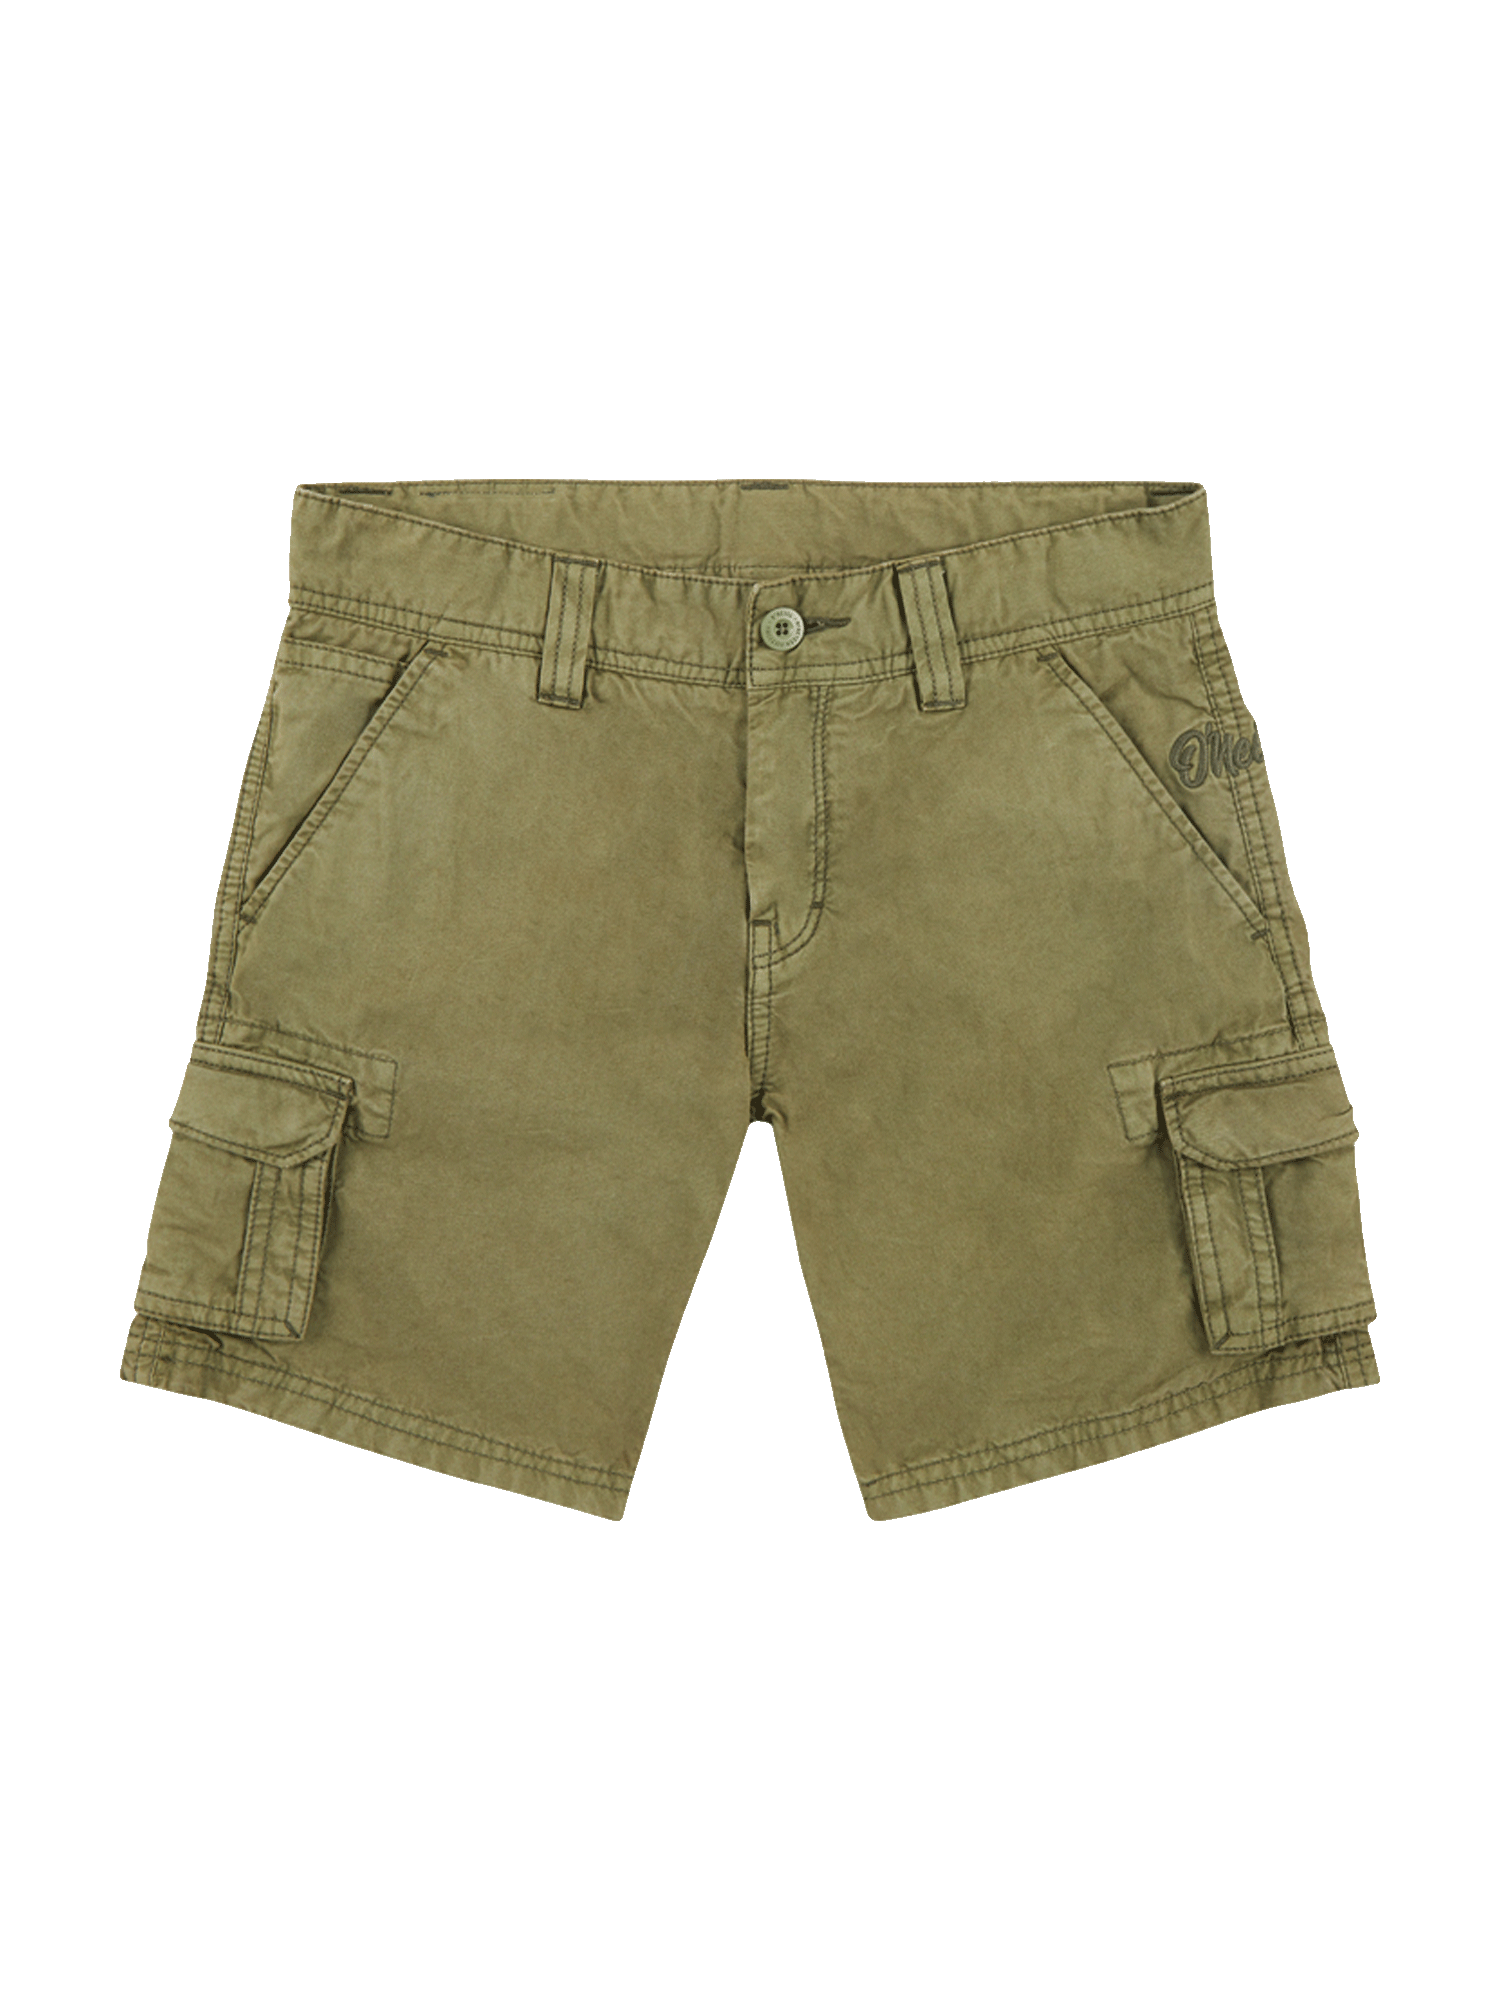 Chłopcy Młodzież (140-176 cm) ONEILL Spodnie CALI BEACH w kolorze Khakim 